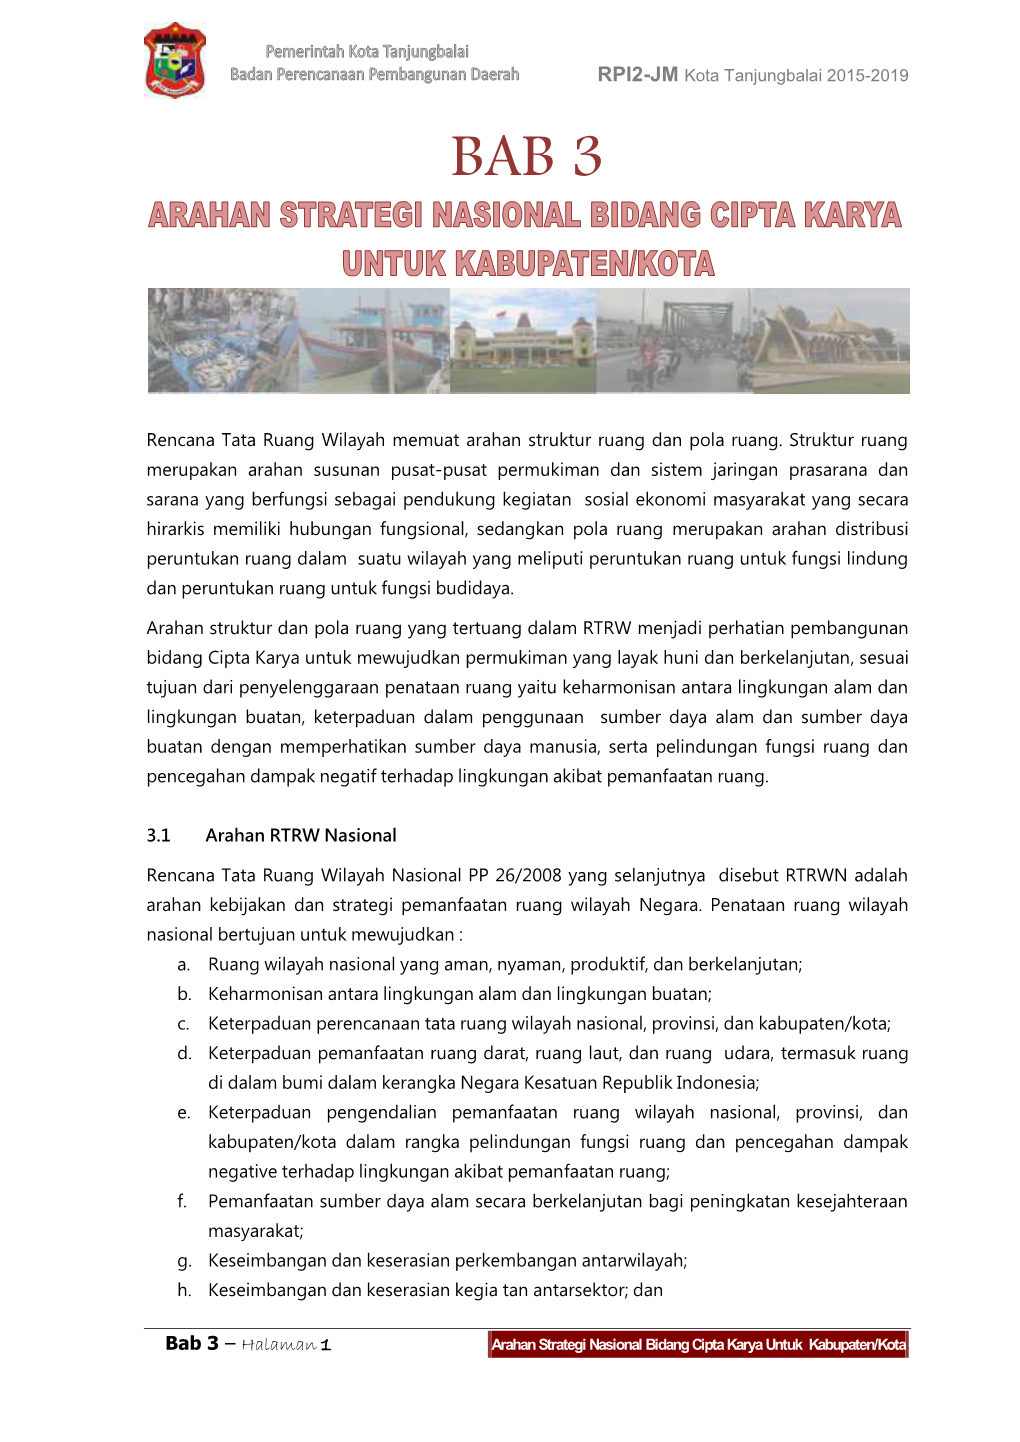 Bab 3 – Halaman 1 Arahan Strategi Nasional Bidang Cipta Karya Untuk Kabupaten/Kota